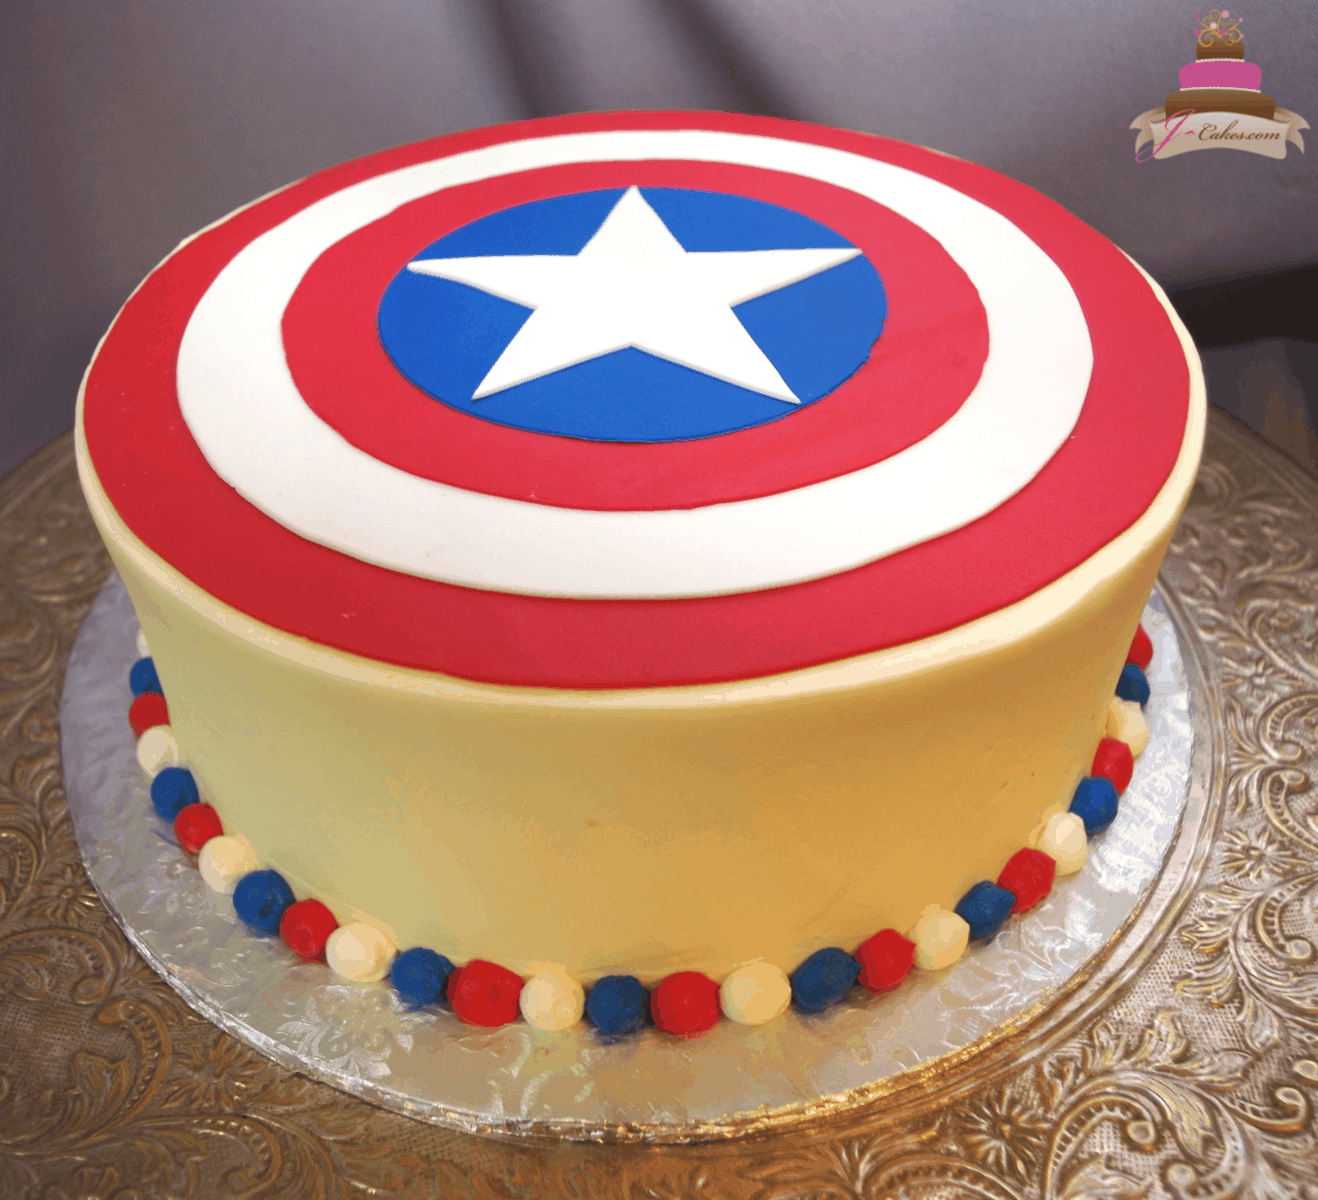 Captain Marvel Cake, Food & Drinks, Homemade Bakes on Carousell